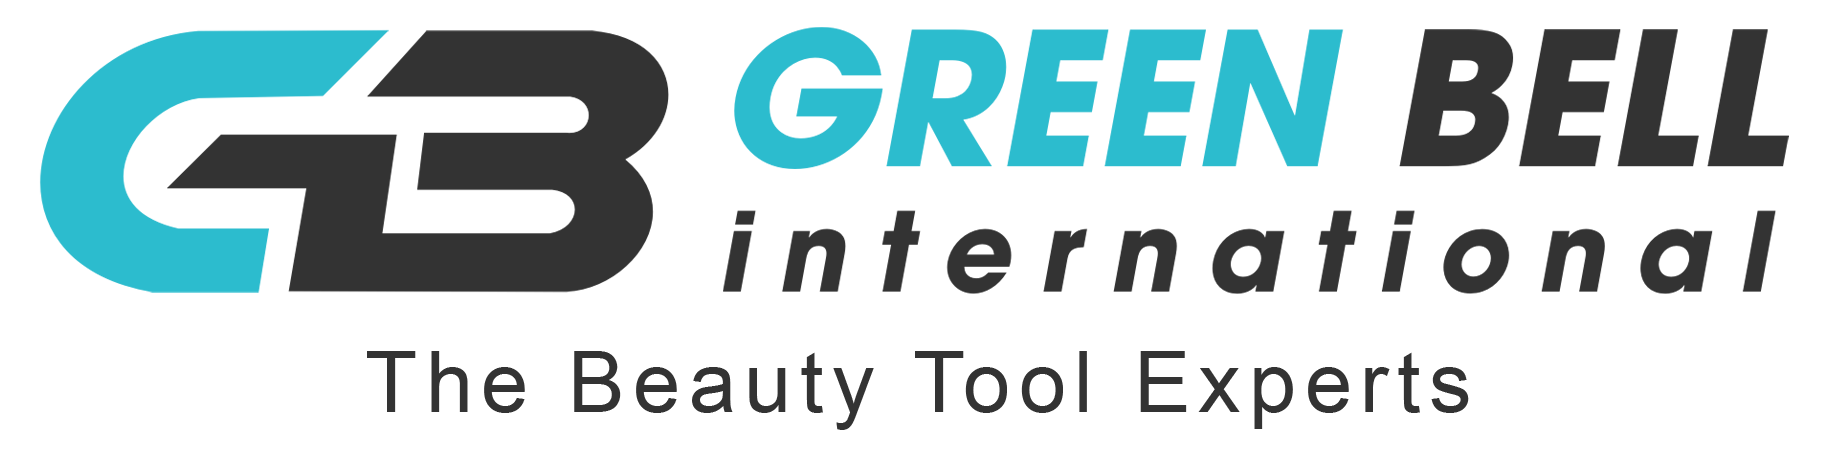 Green Bell International